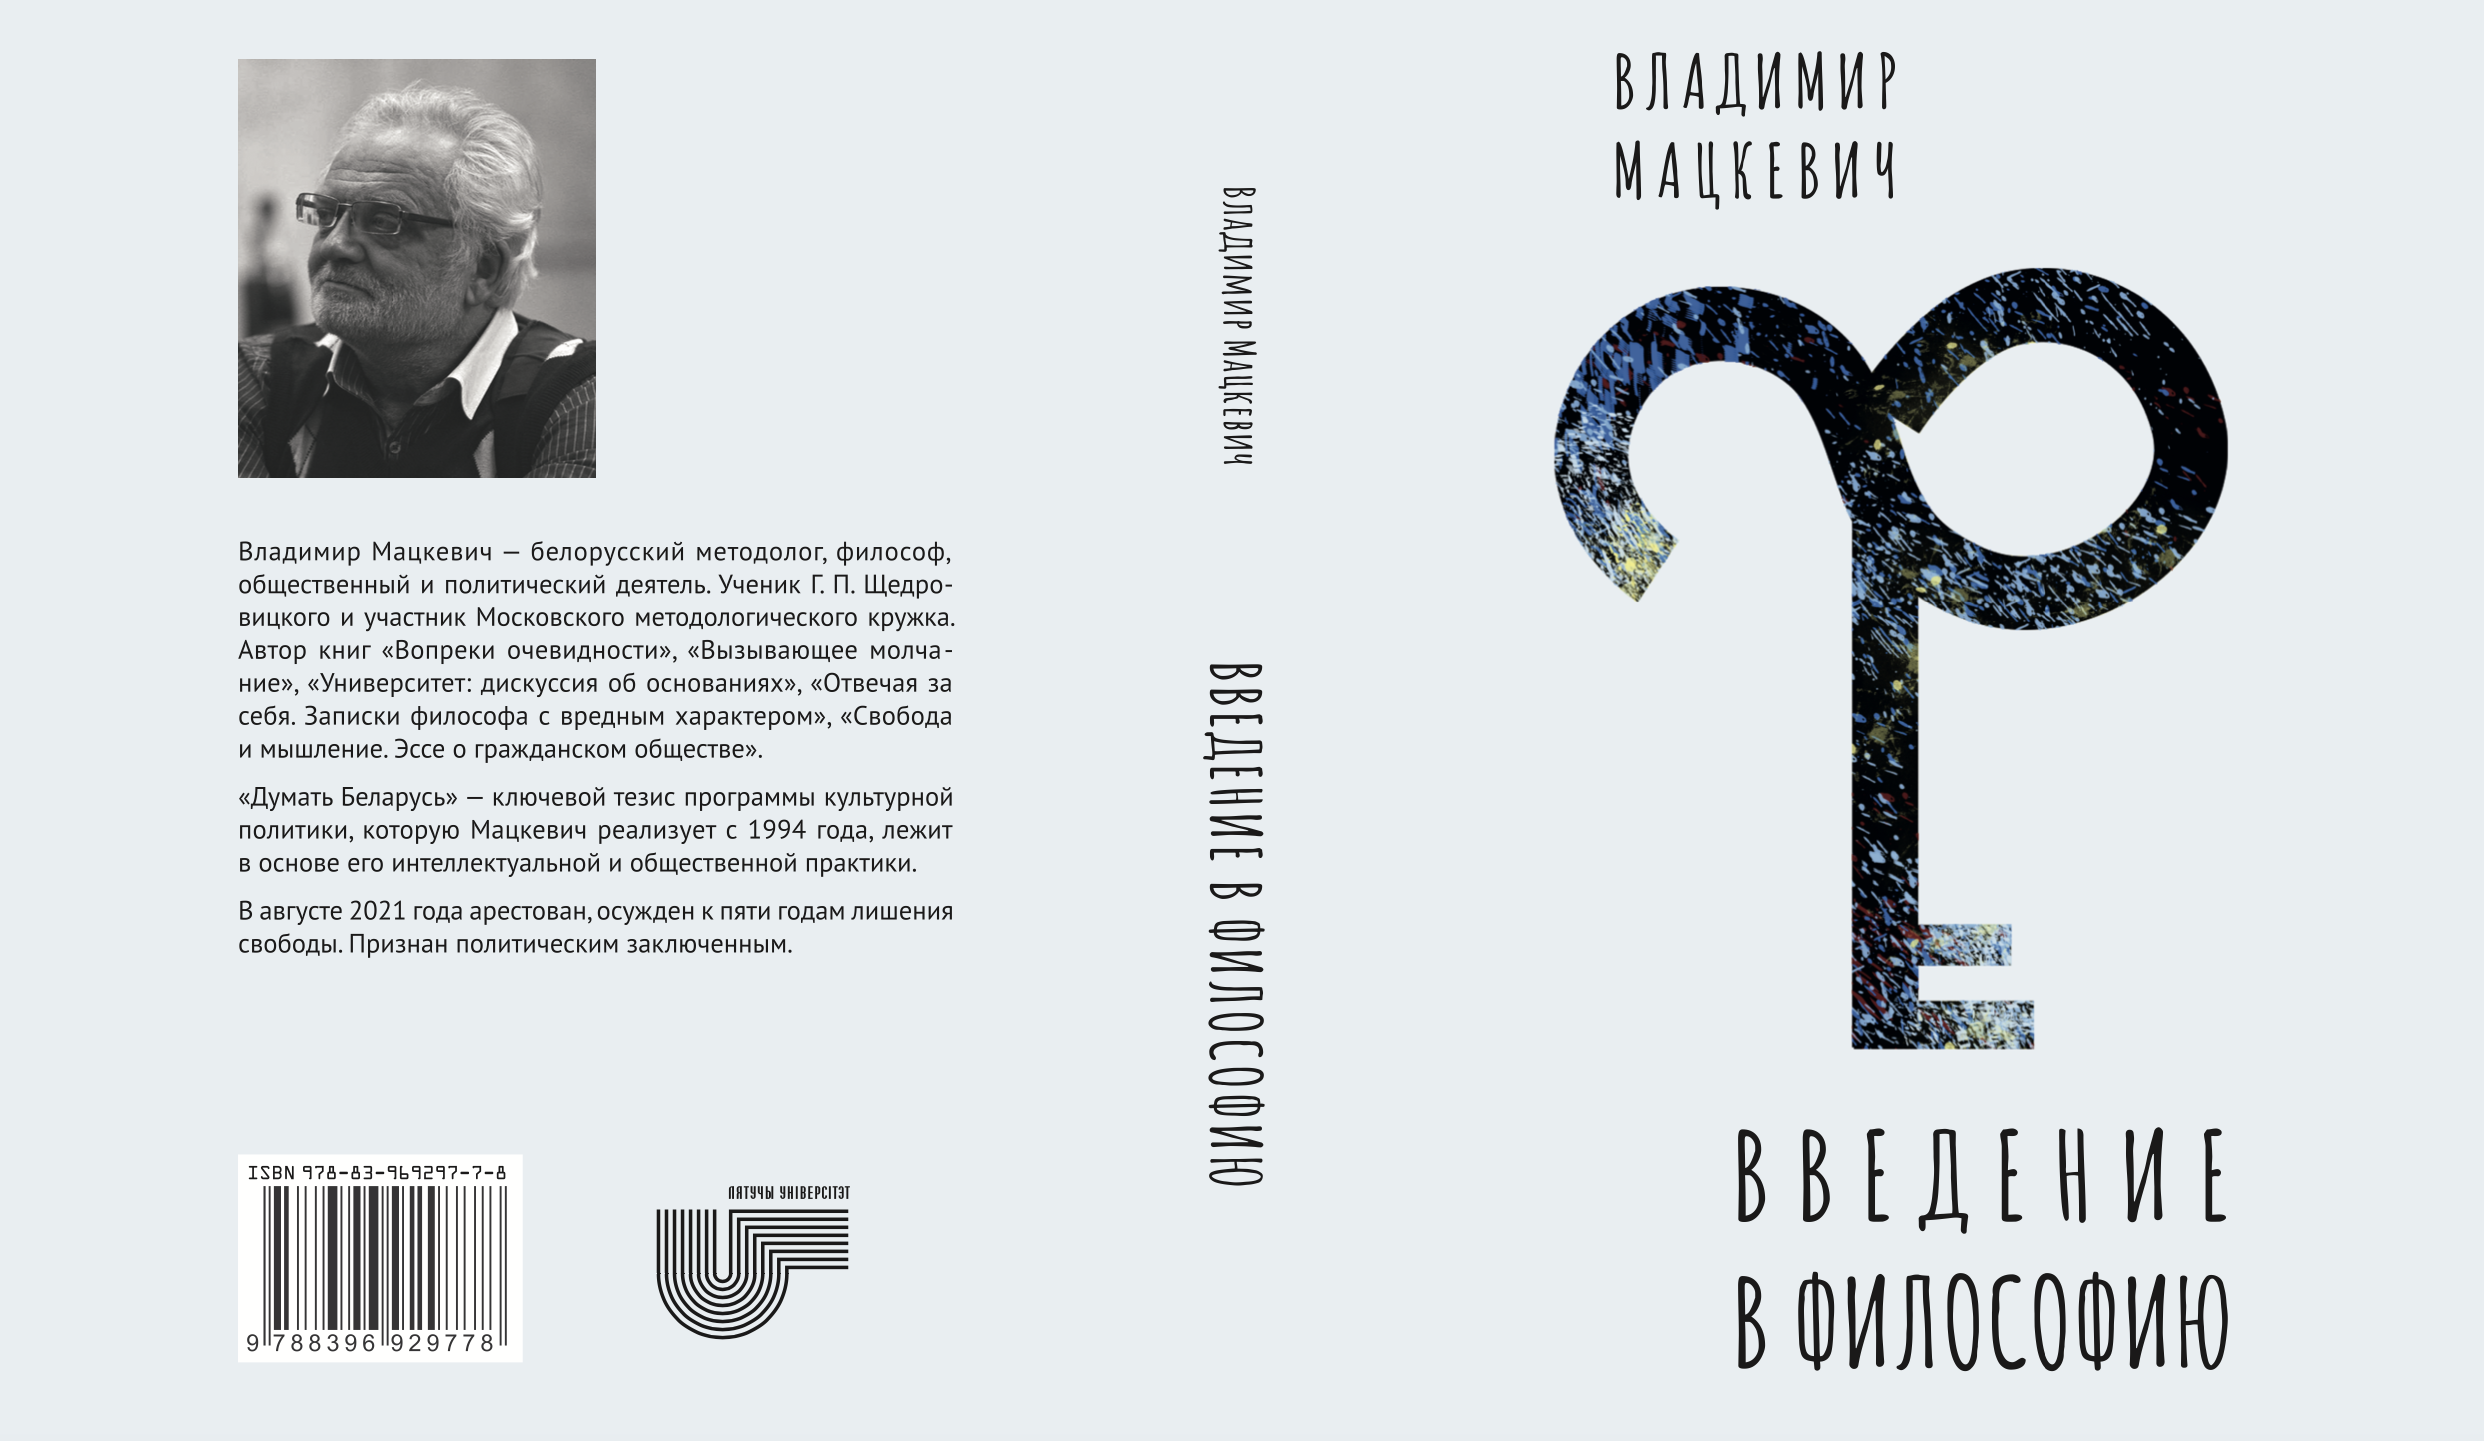 Вышла электронная версия книги Владимира Мацкевича «Введение в философию»